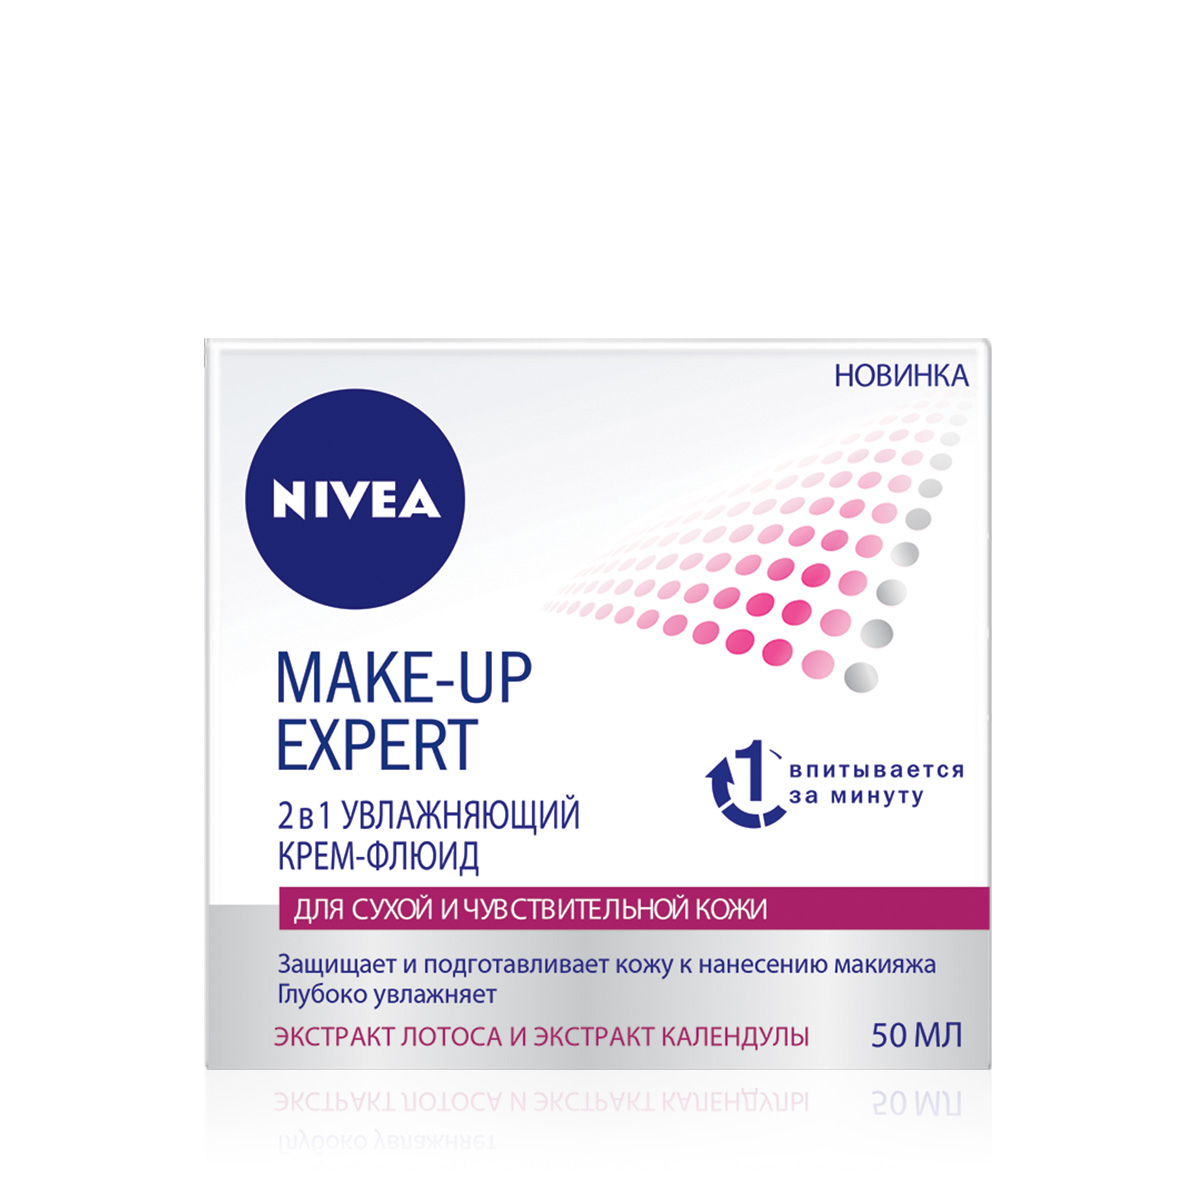 Купить Крем-флюид для лица NIVEA Make-up Expert 2в1 увлажняющий 50 мл, make-up Expert 50 мл